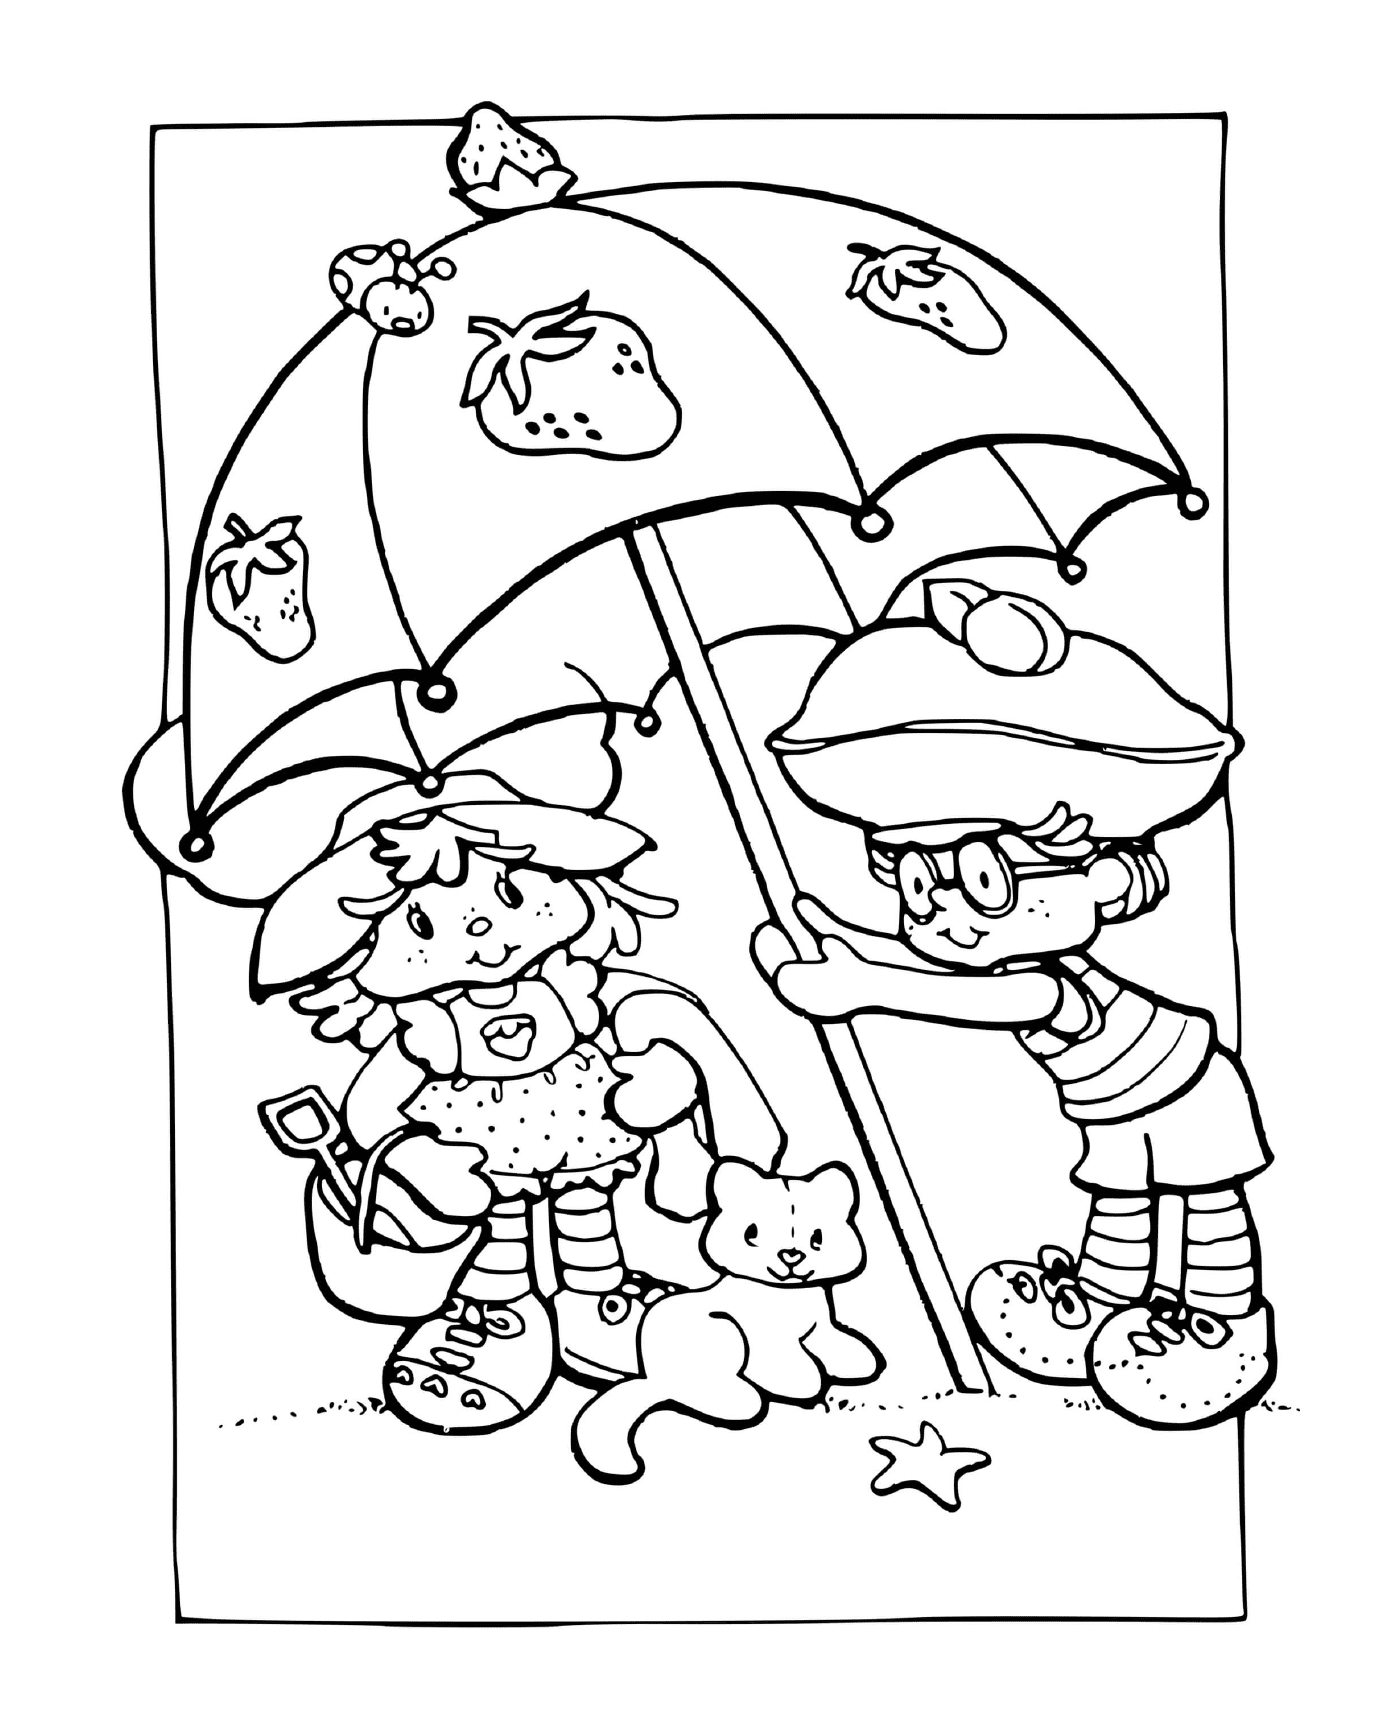 Charlotte aux fraises sous un parasol